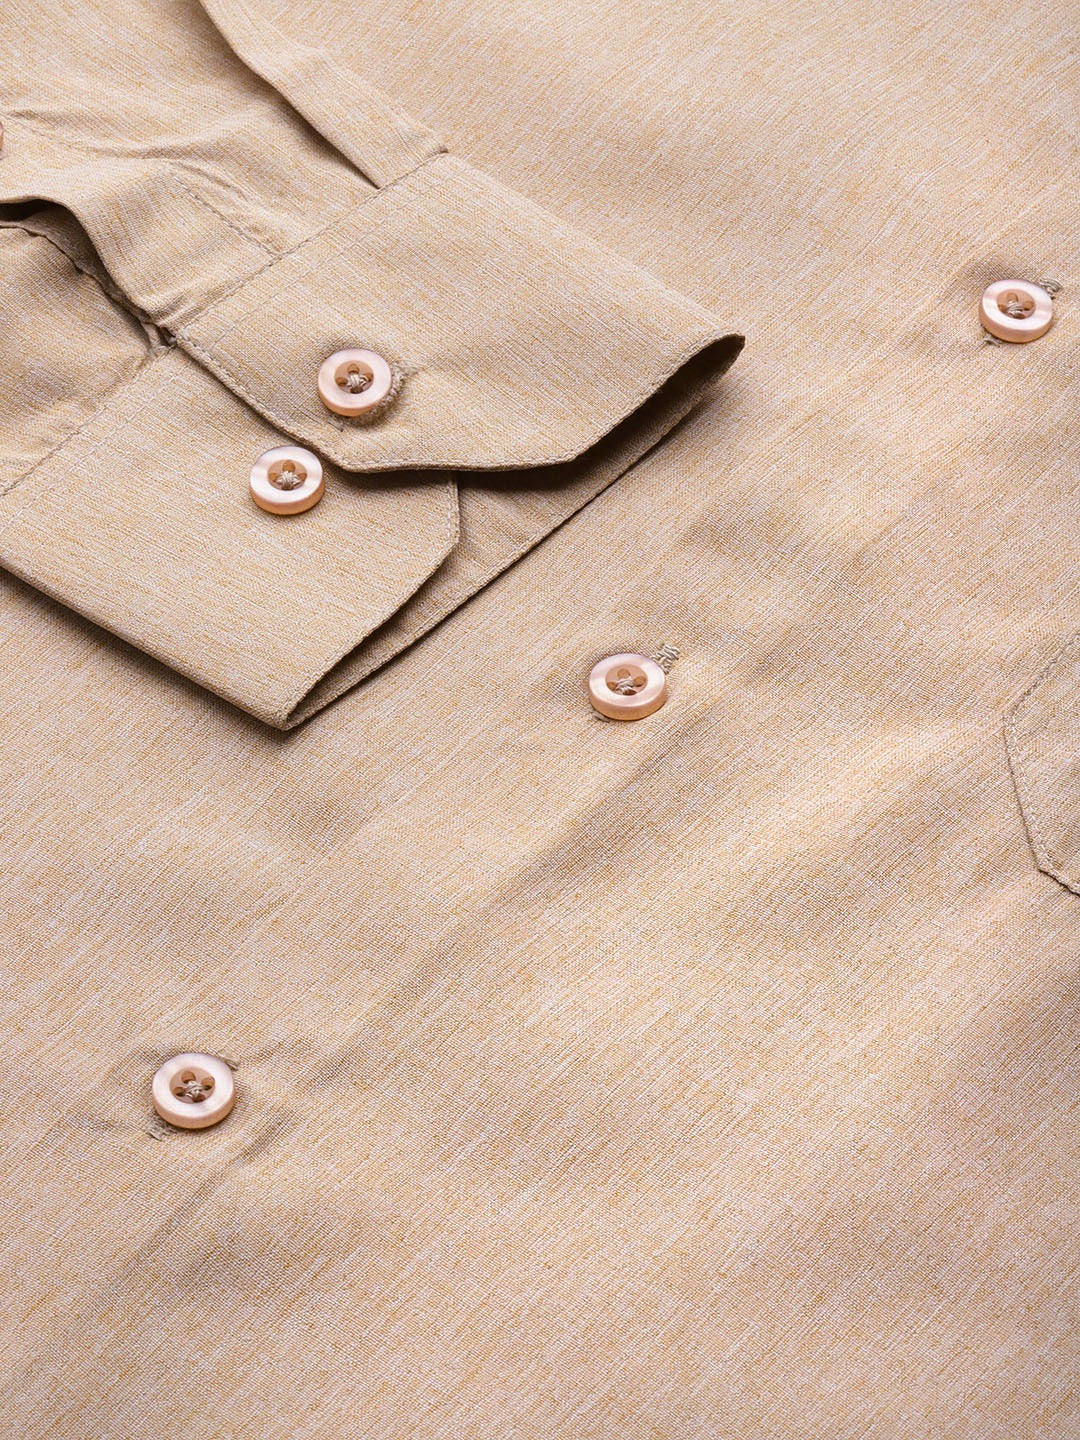 Men's Cotton Beige Casual Shirt